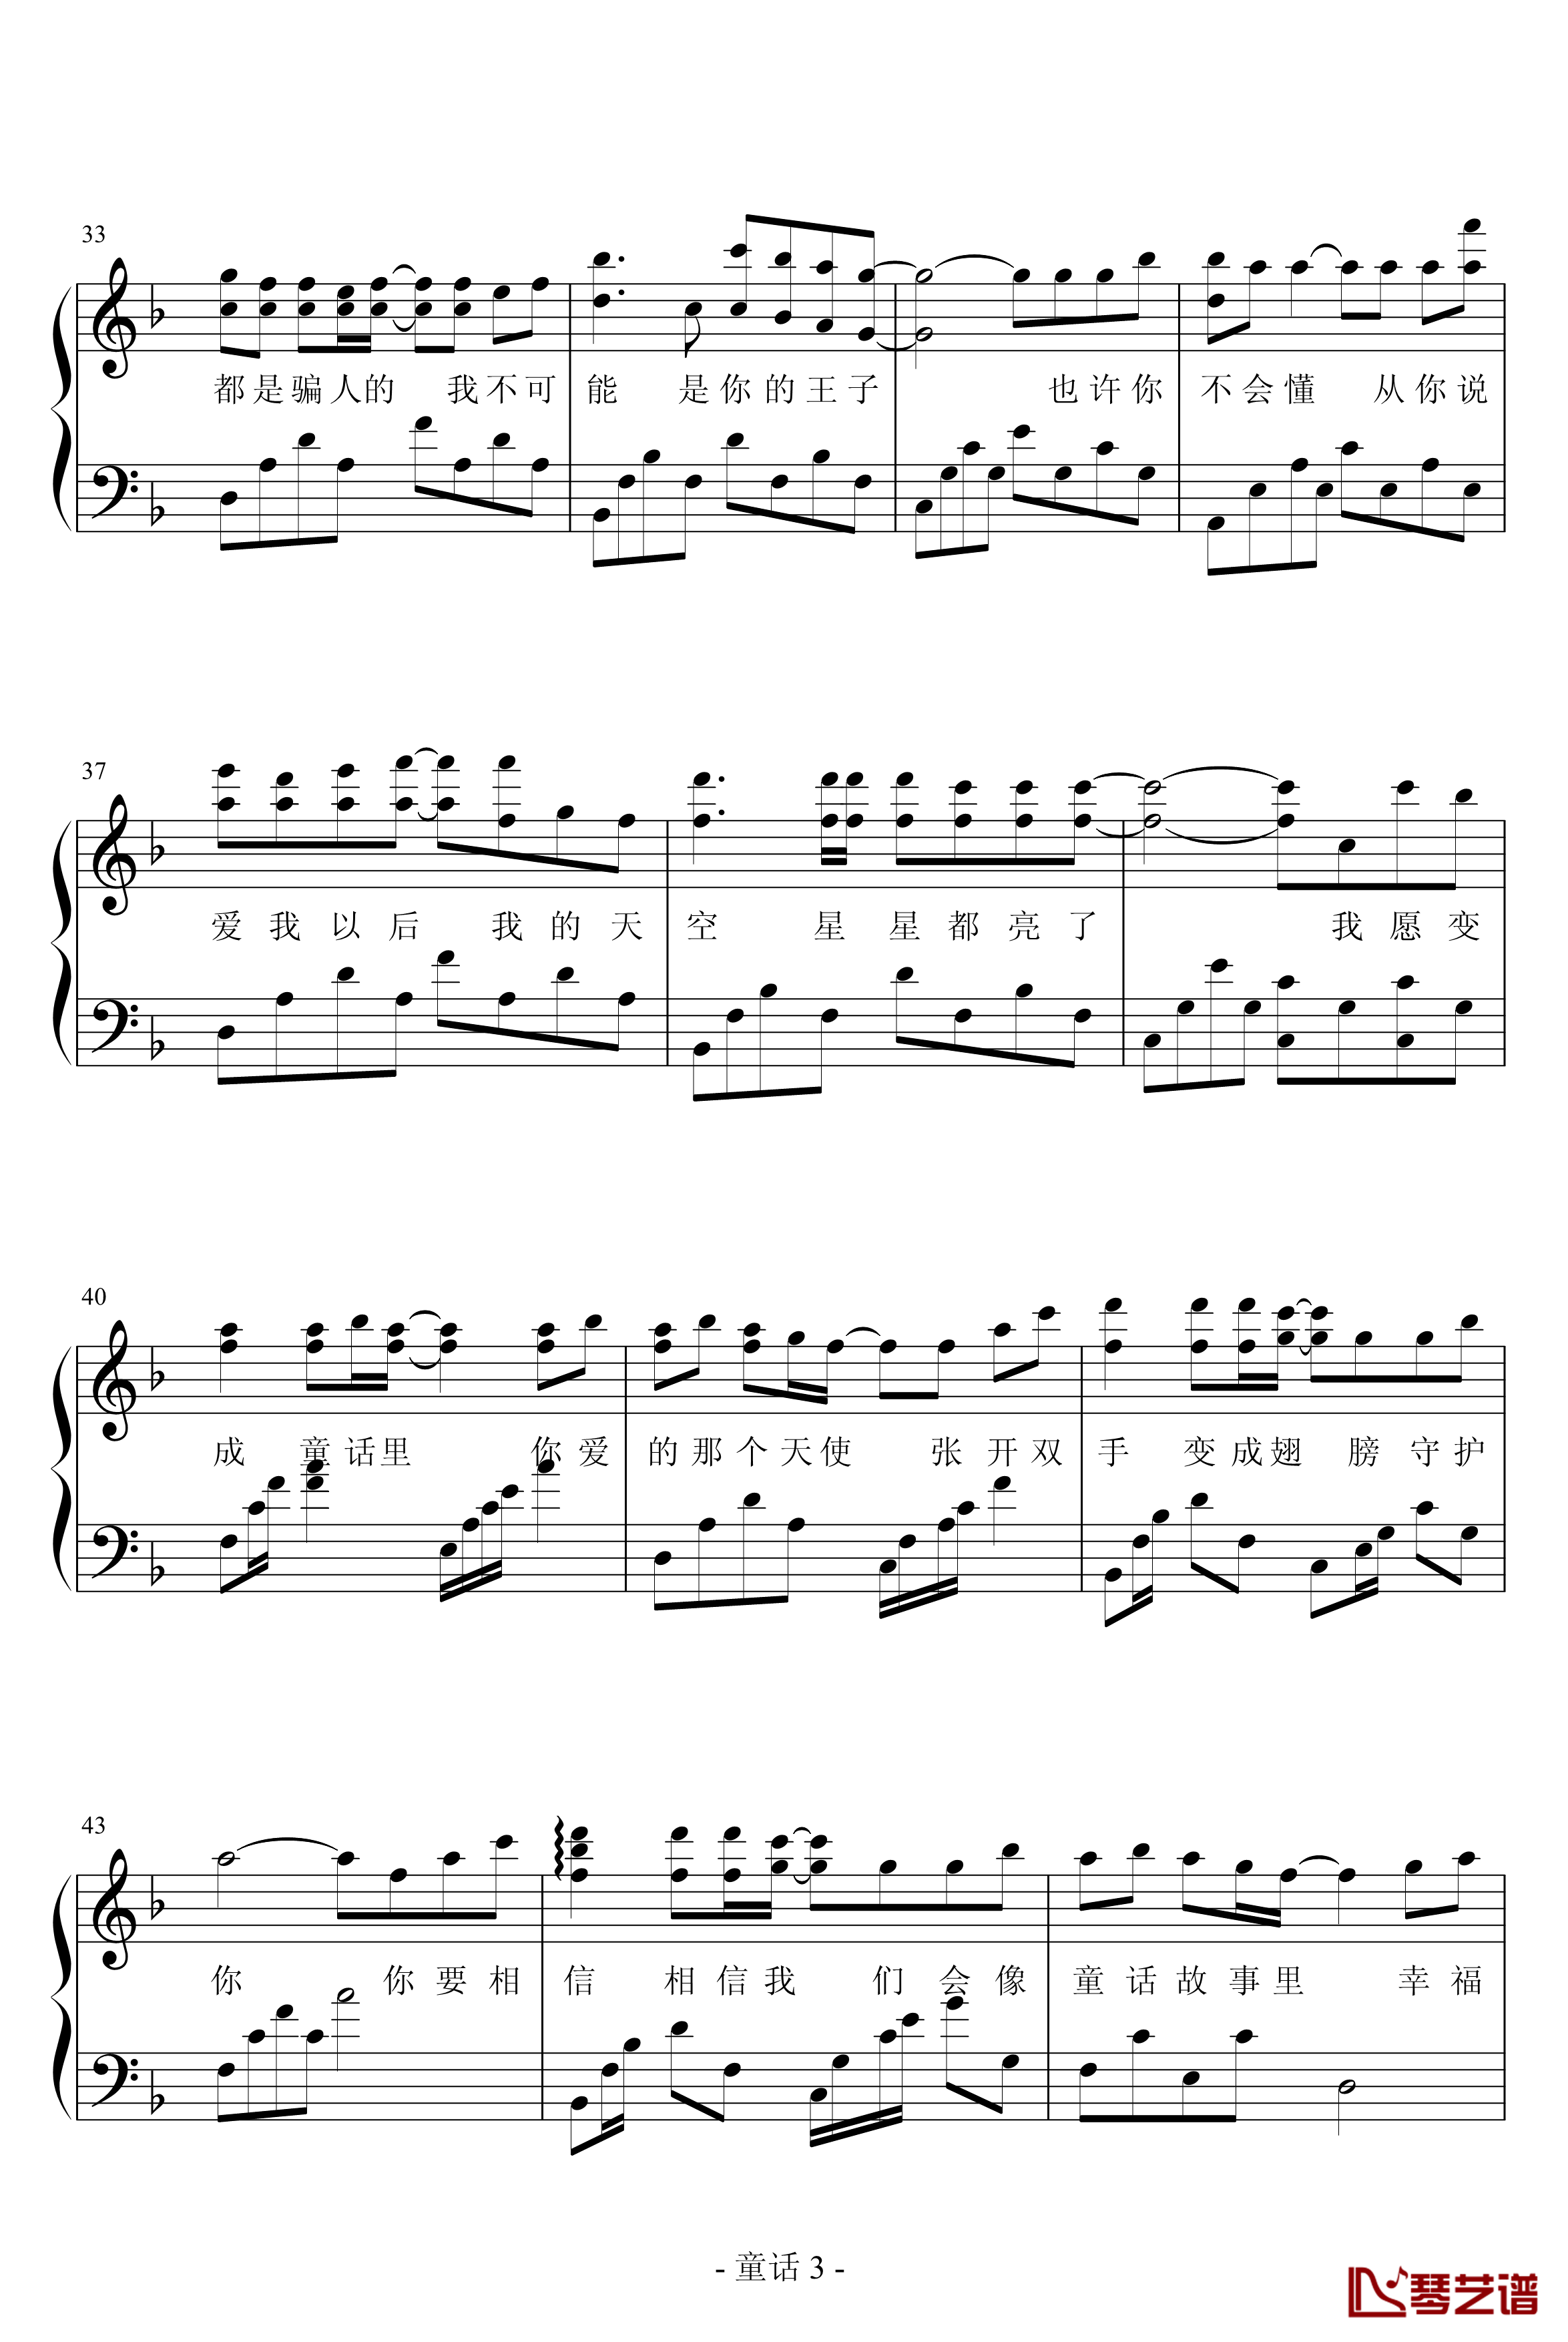 童话钢琴谱-浪客剑心版-演奏版-光良3